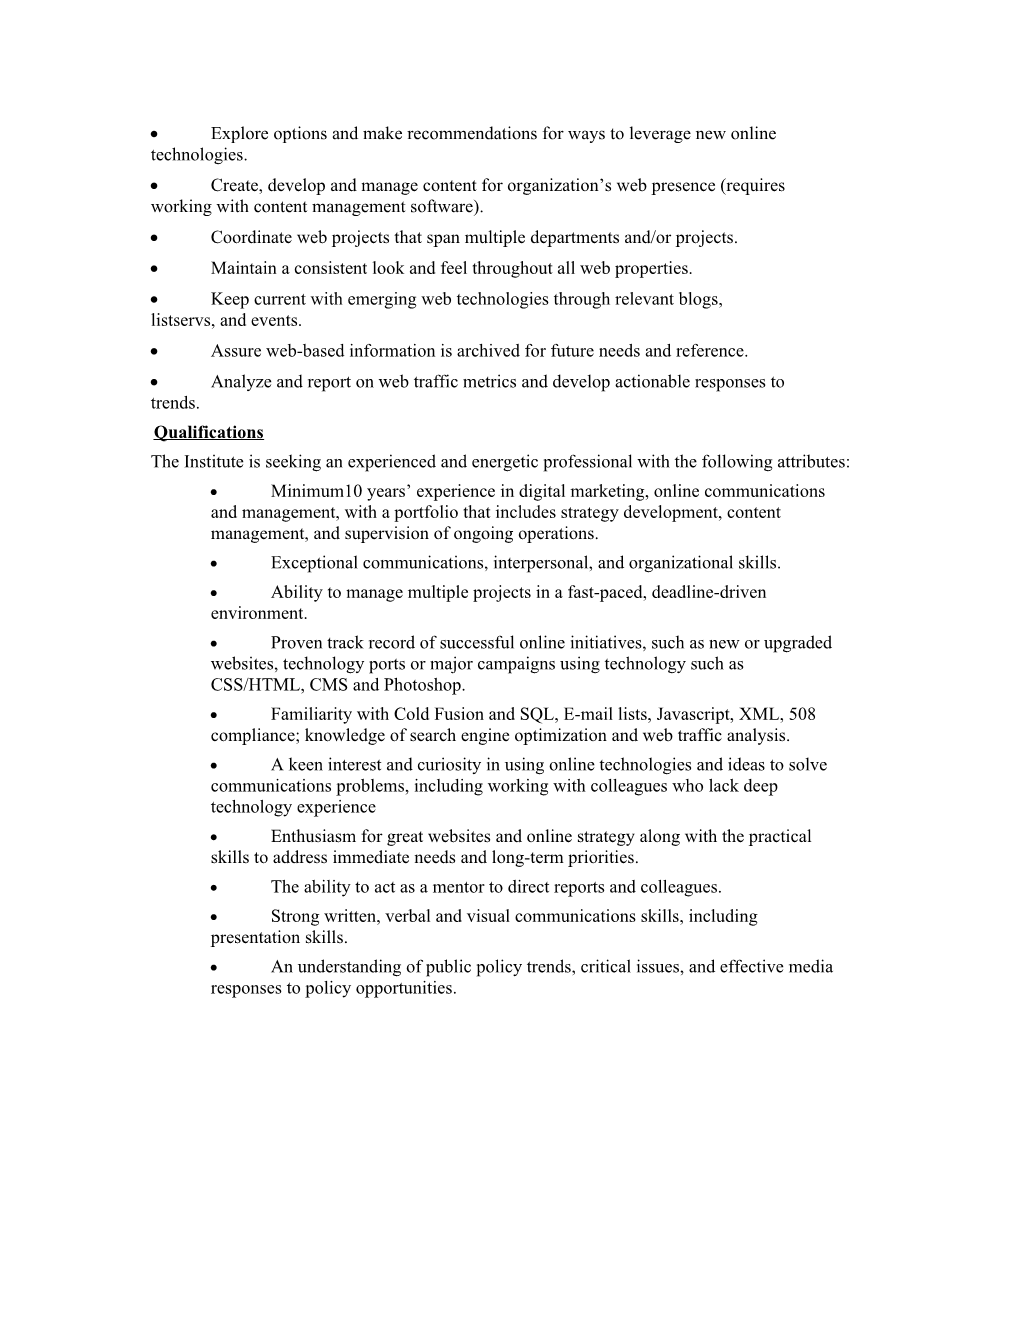 Annex 2.4.Job Position Descriptions for Communications Staff*